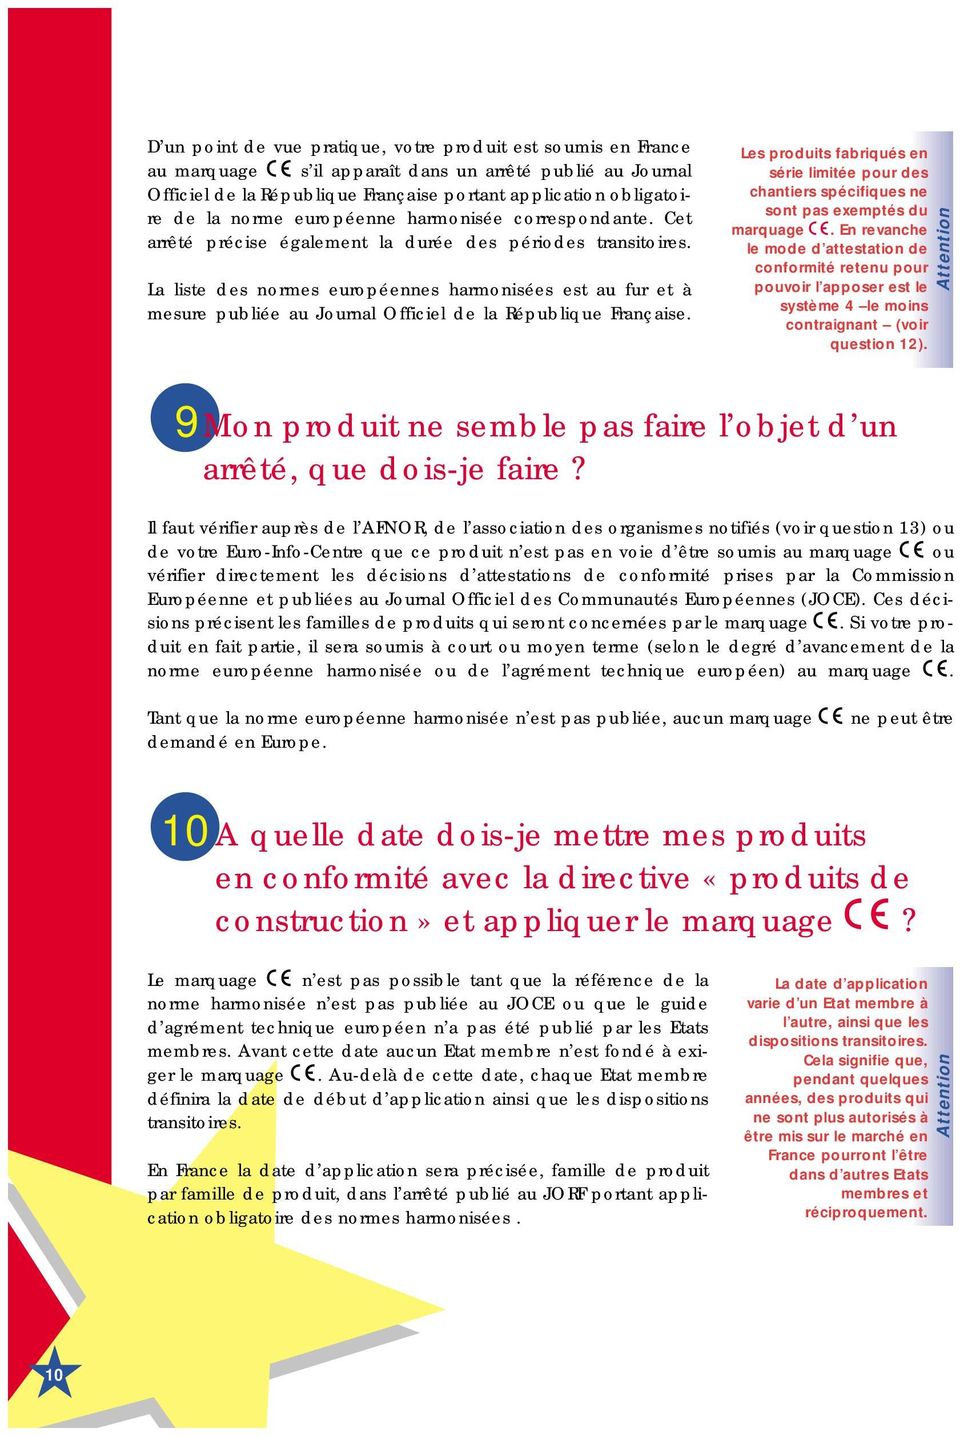 La liste des normes européennes harmonisées est au fur et à mesure publiée au Journal Officiel de la République Française.